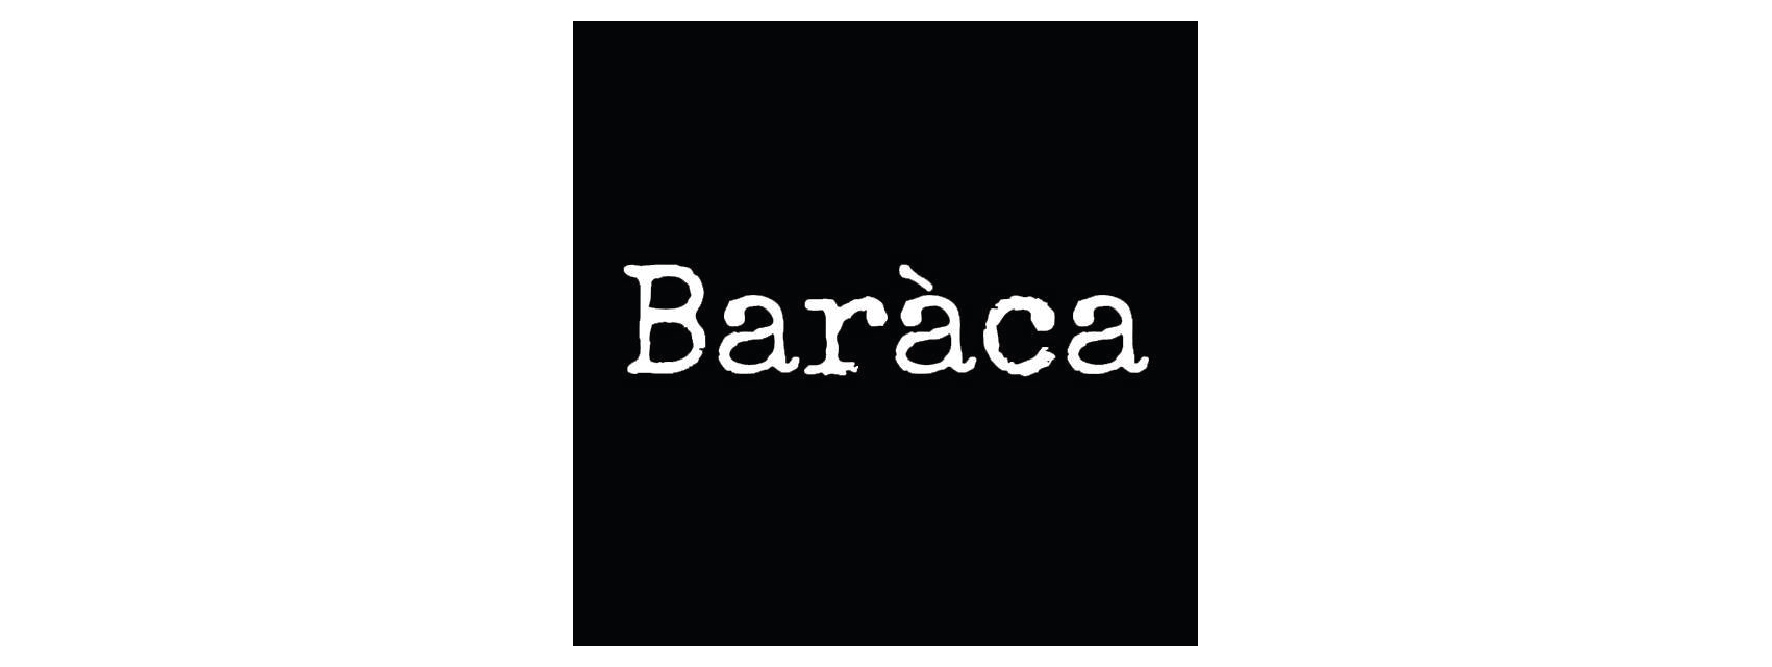 Baraca